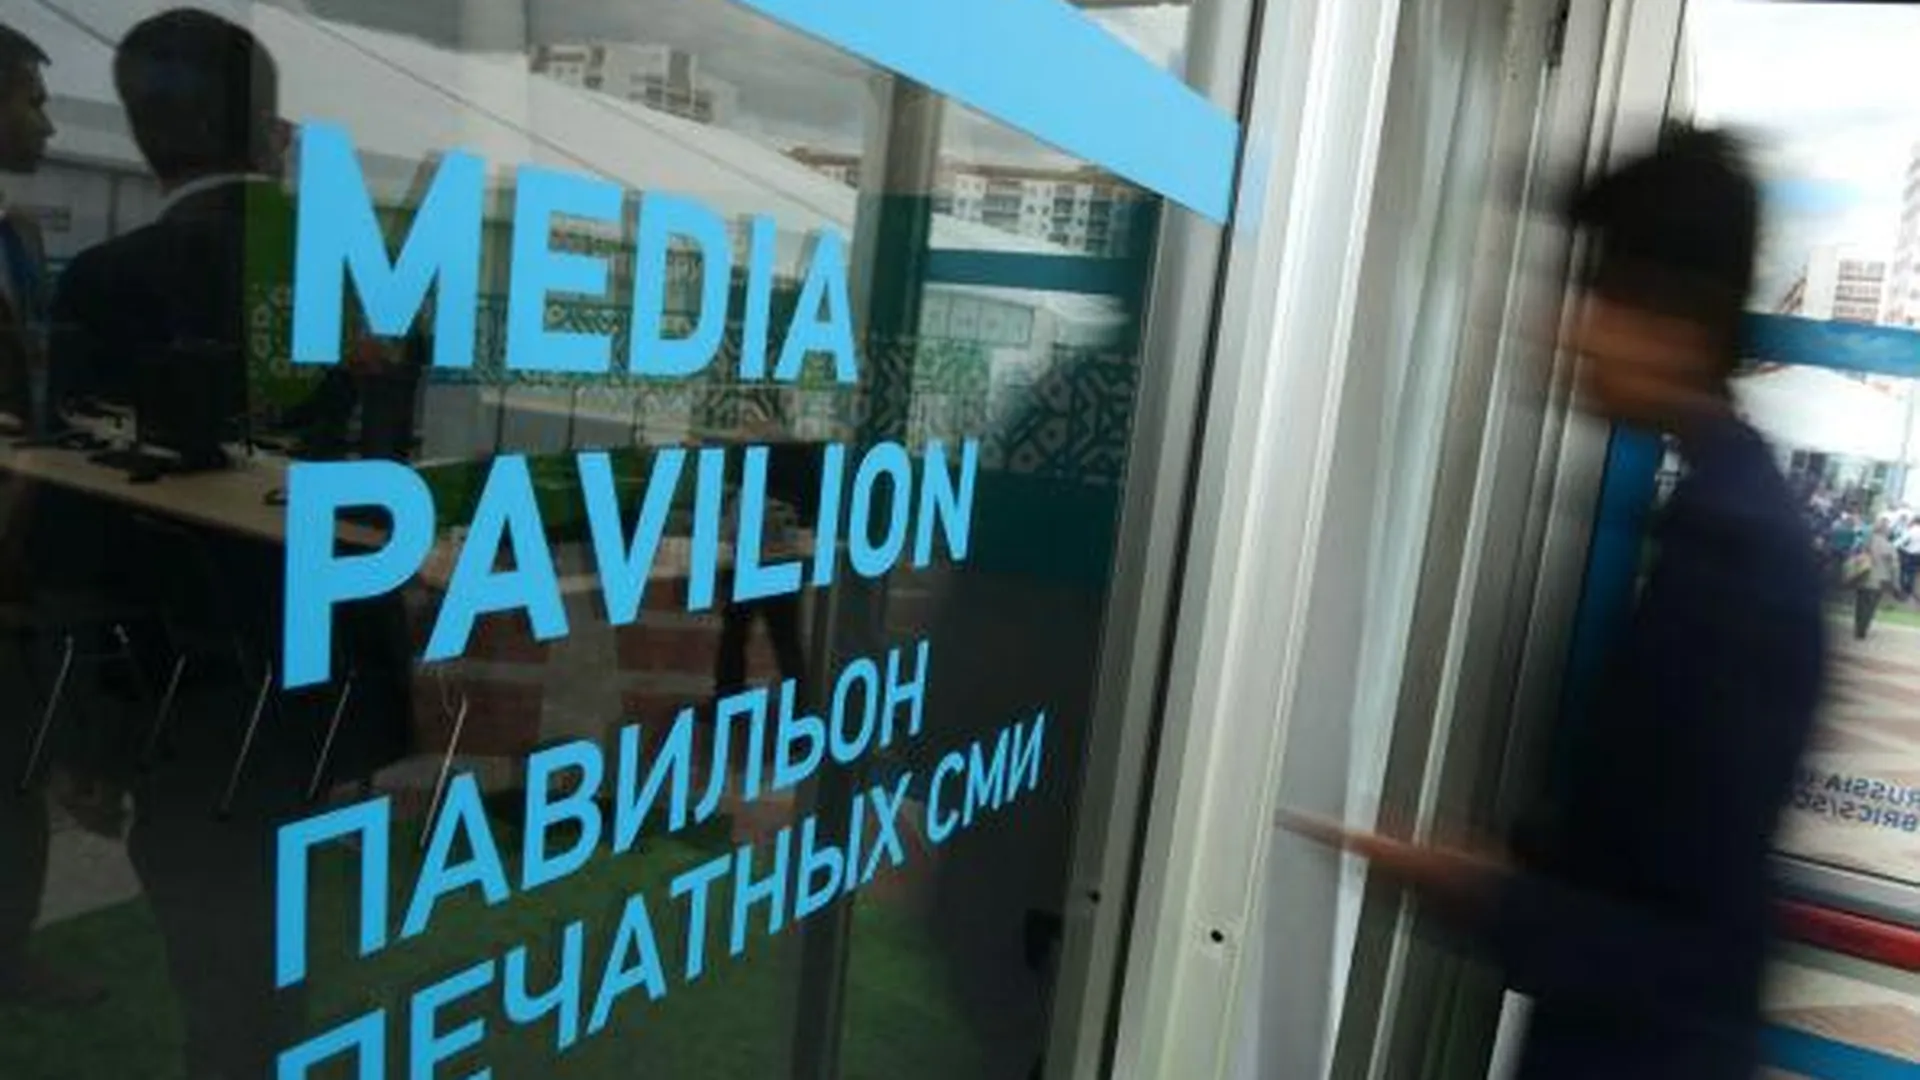 Медиа-неделя стартует в Люберецком районе 5 сентября